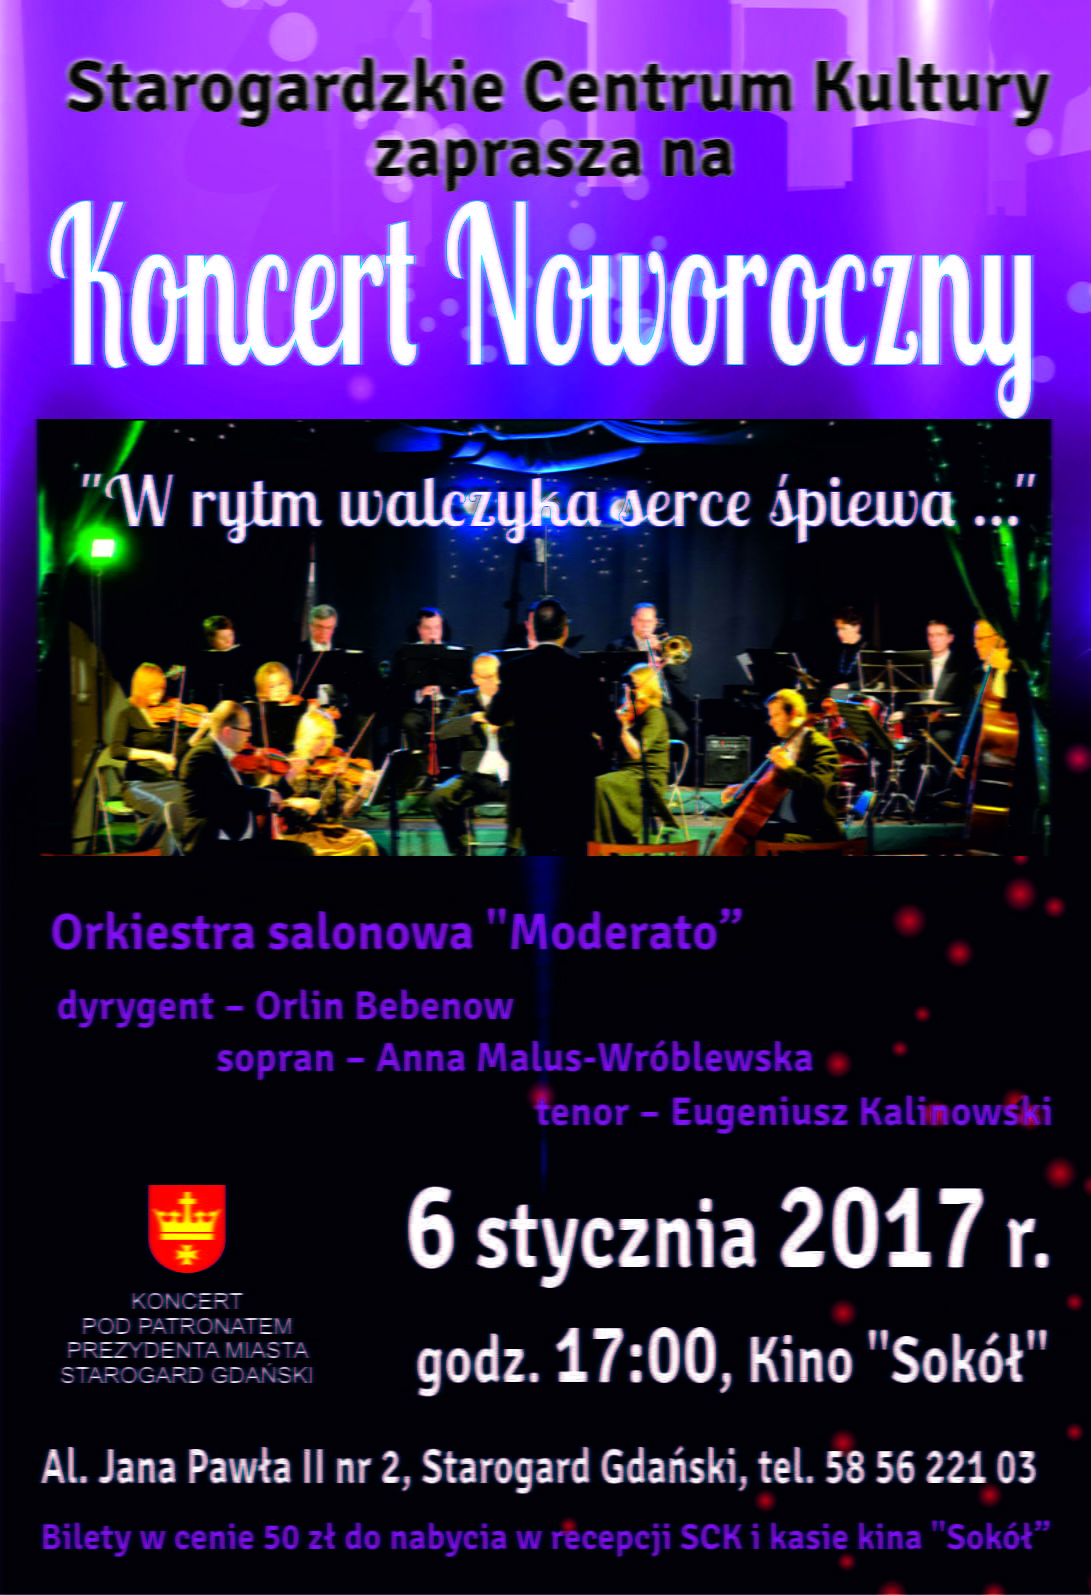 Koncert Noworoczny Orkiestry Salonowej "Moderato" z Bydgoszczy